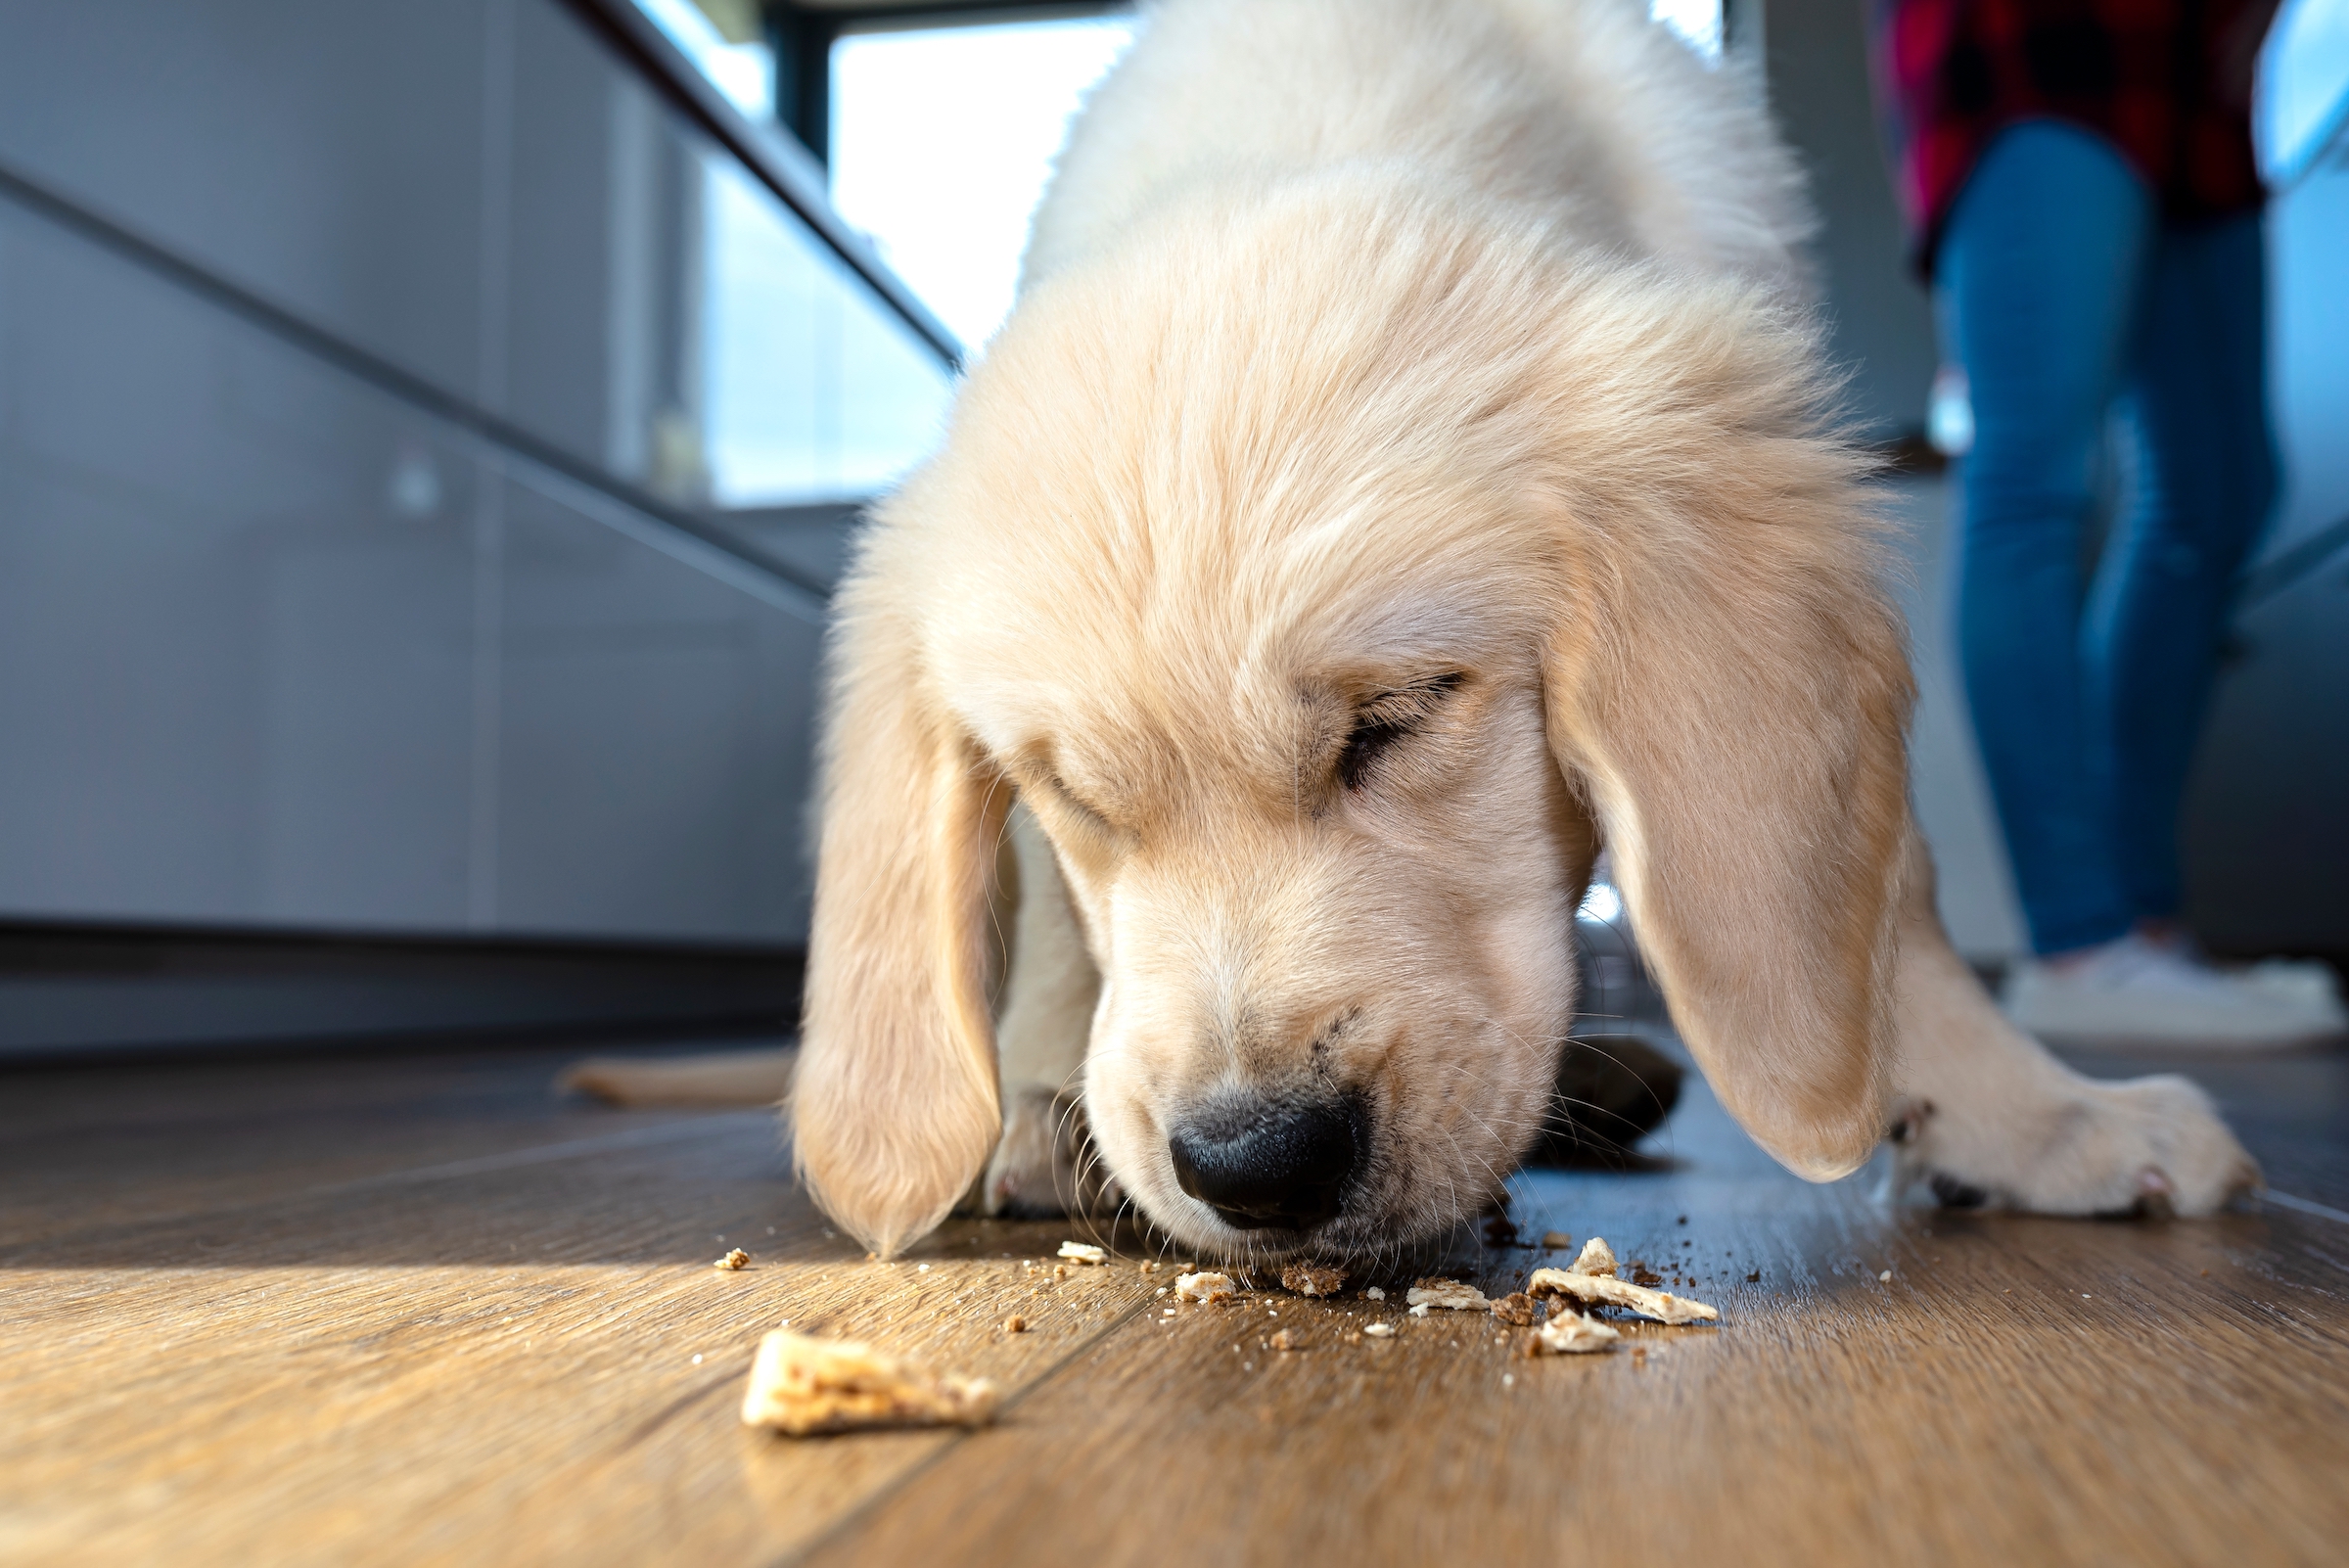 Golden retriever puppy eats crumbs off the floor